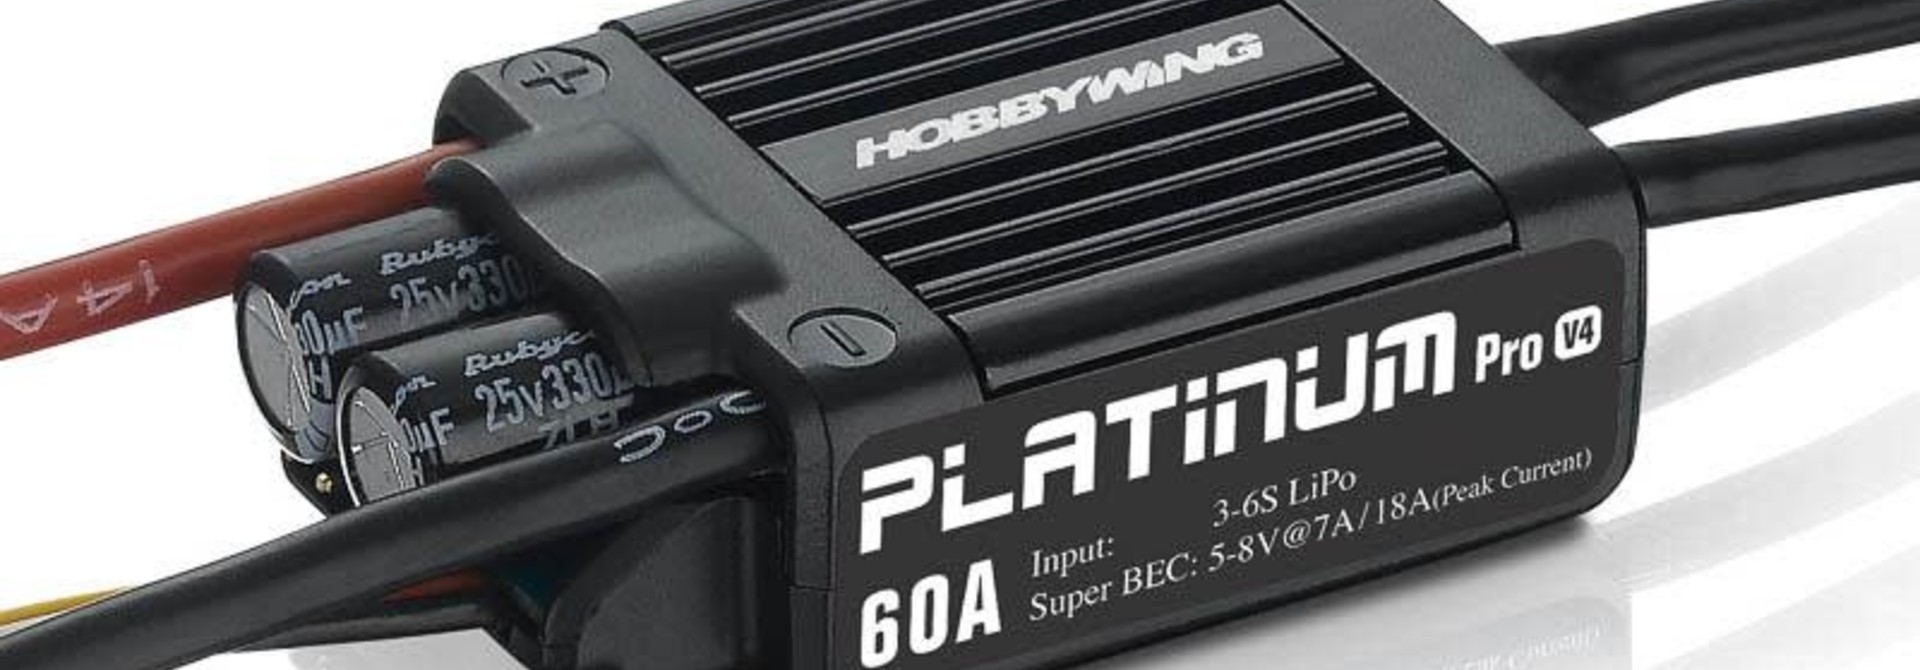 Hobbywing Platinum Pro 60A ESC V4 2-6s, 7A BEC